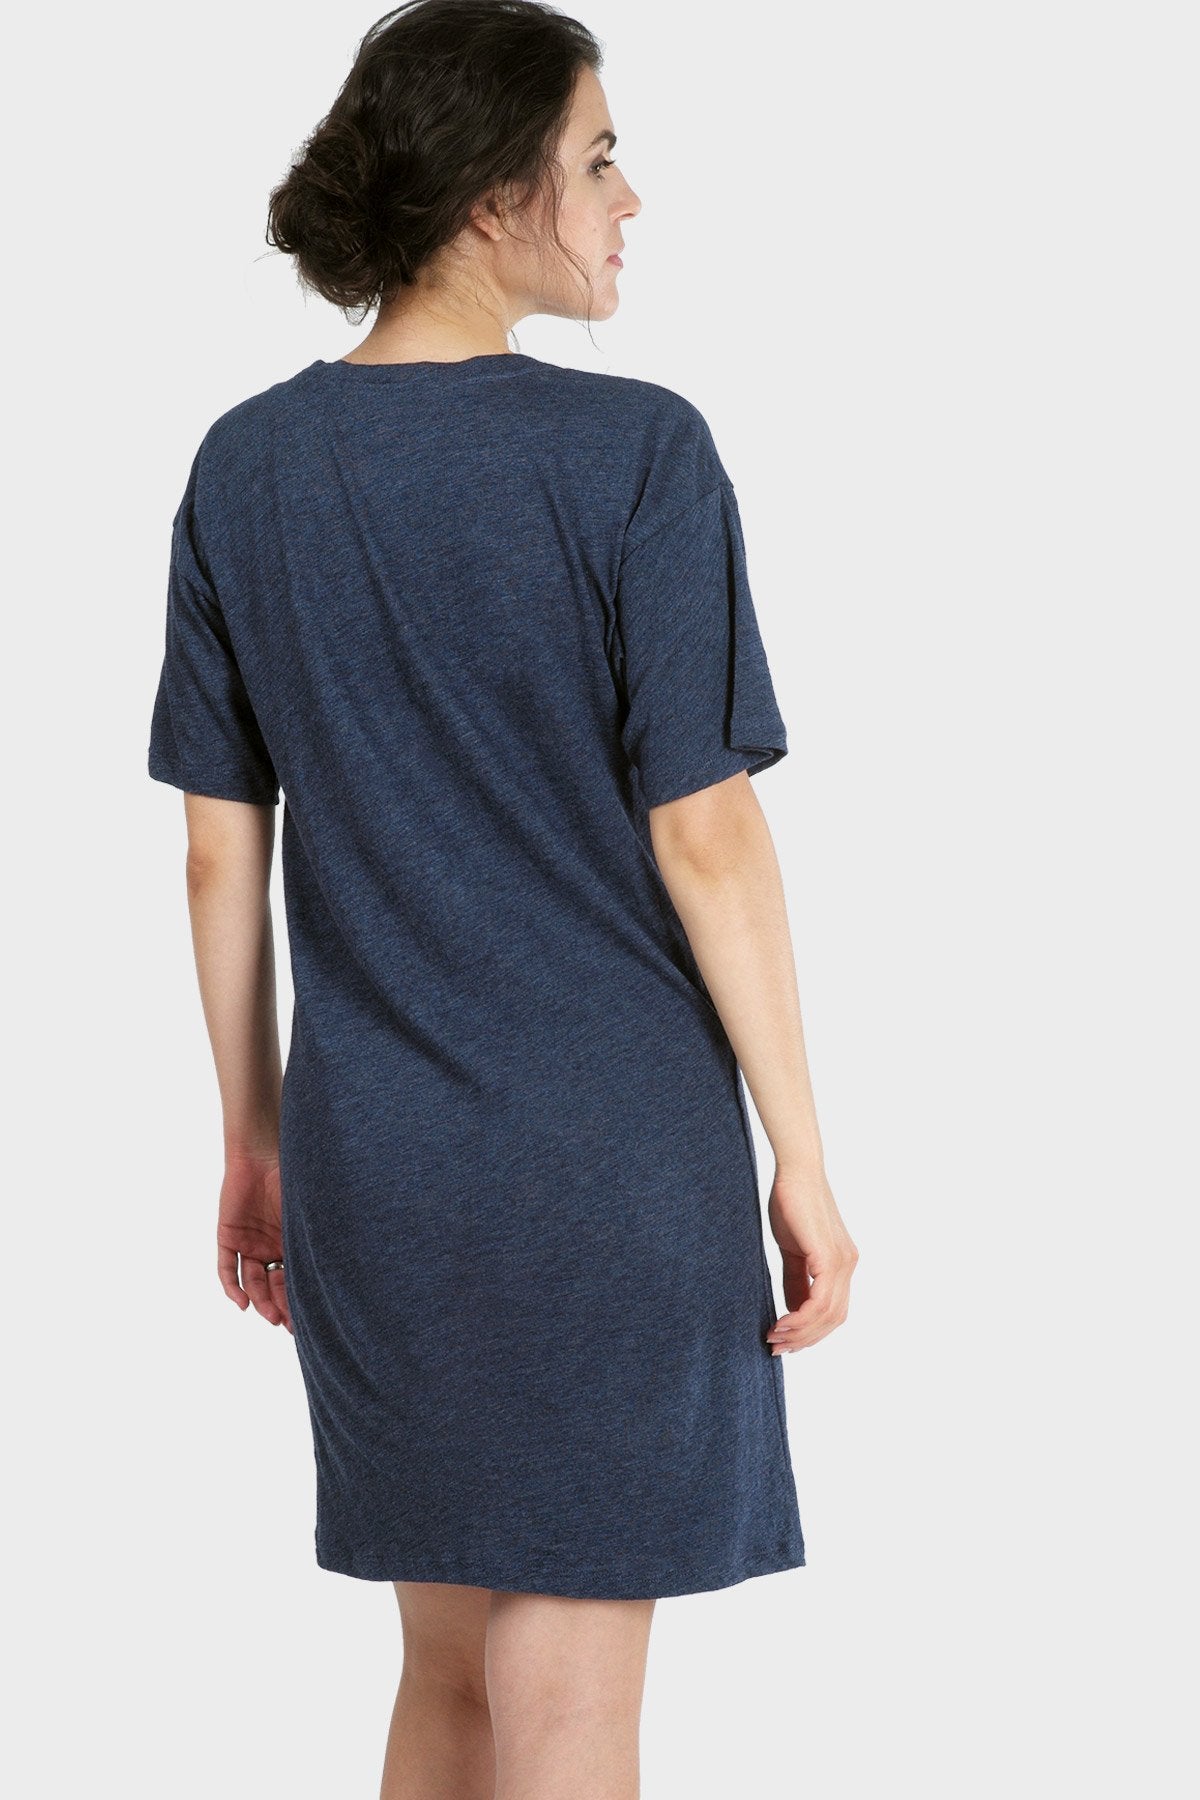 MIKA ORGANIC T-SHIRT DRESS